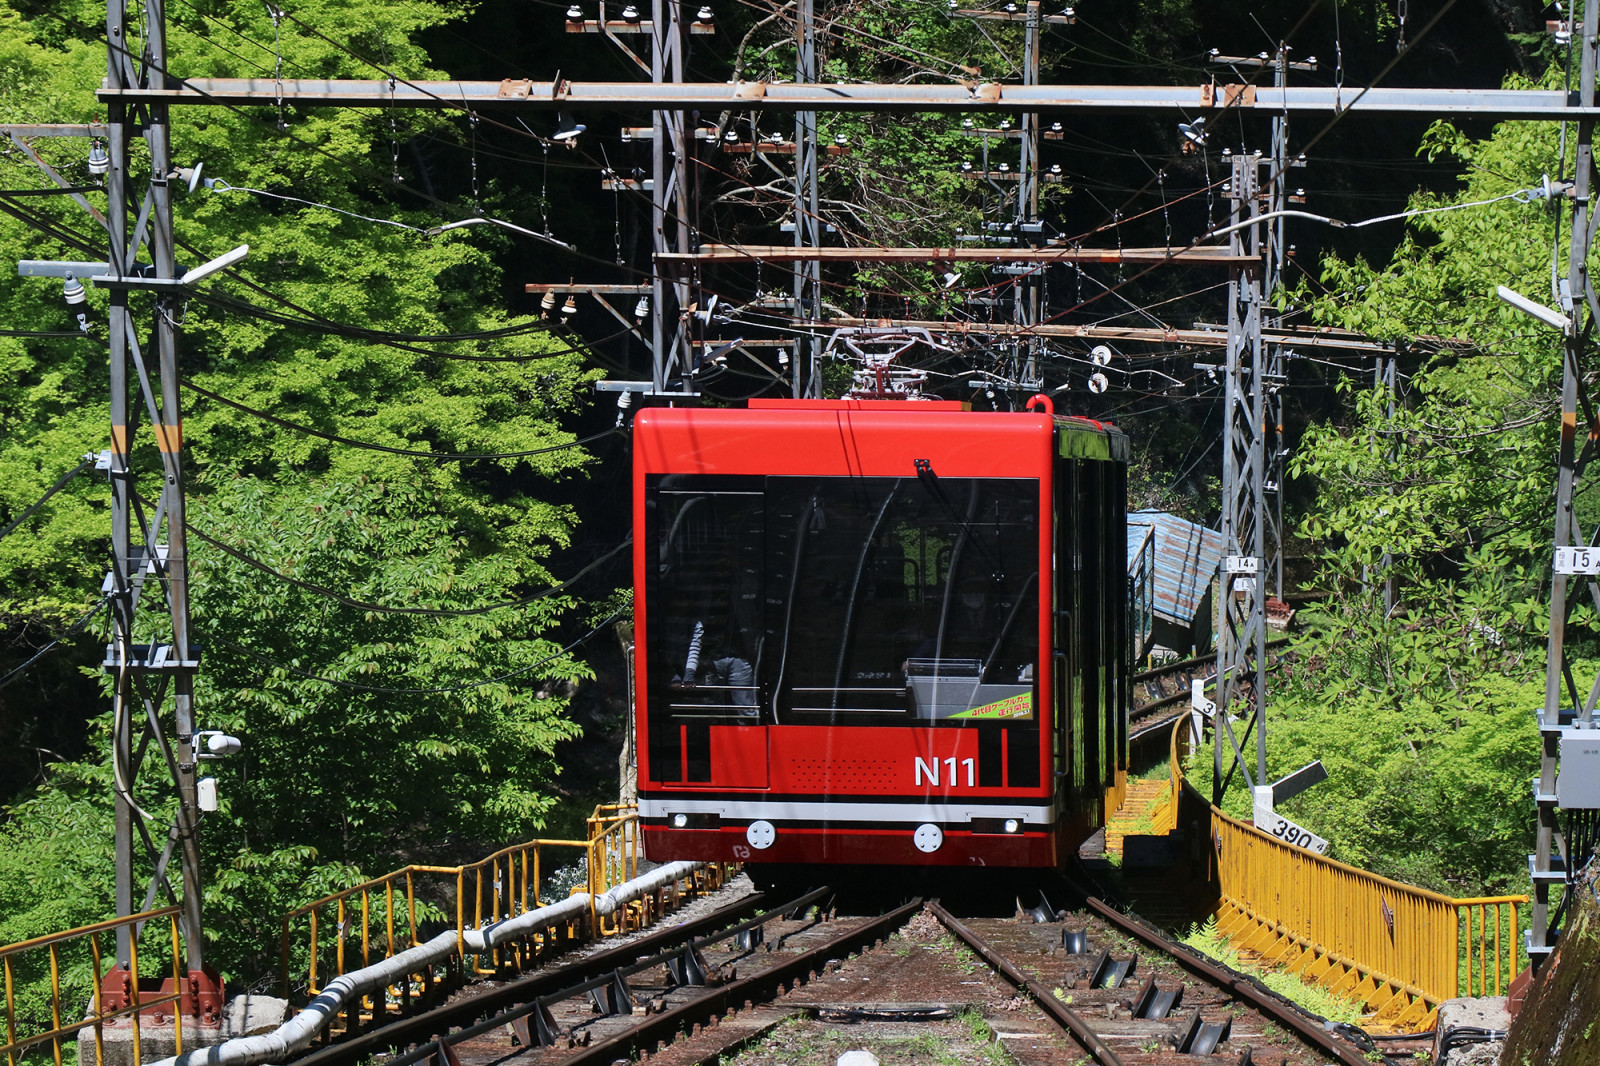 高野山ケーブルカー 観光スポット 体験 和歌山県公式観光サイト